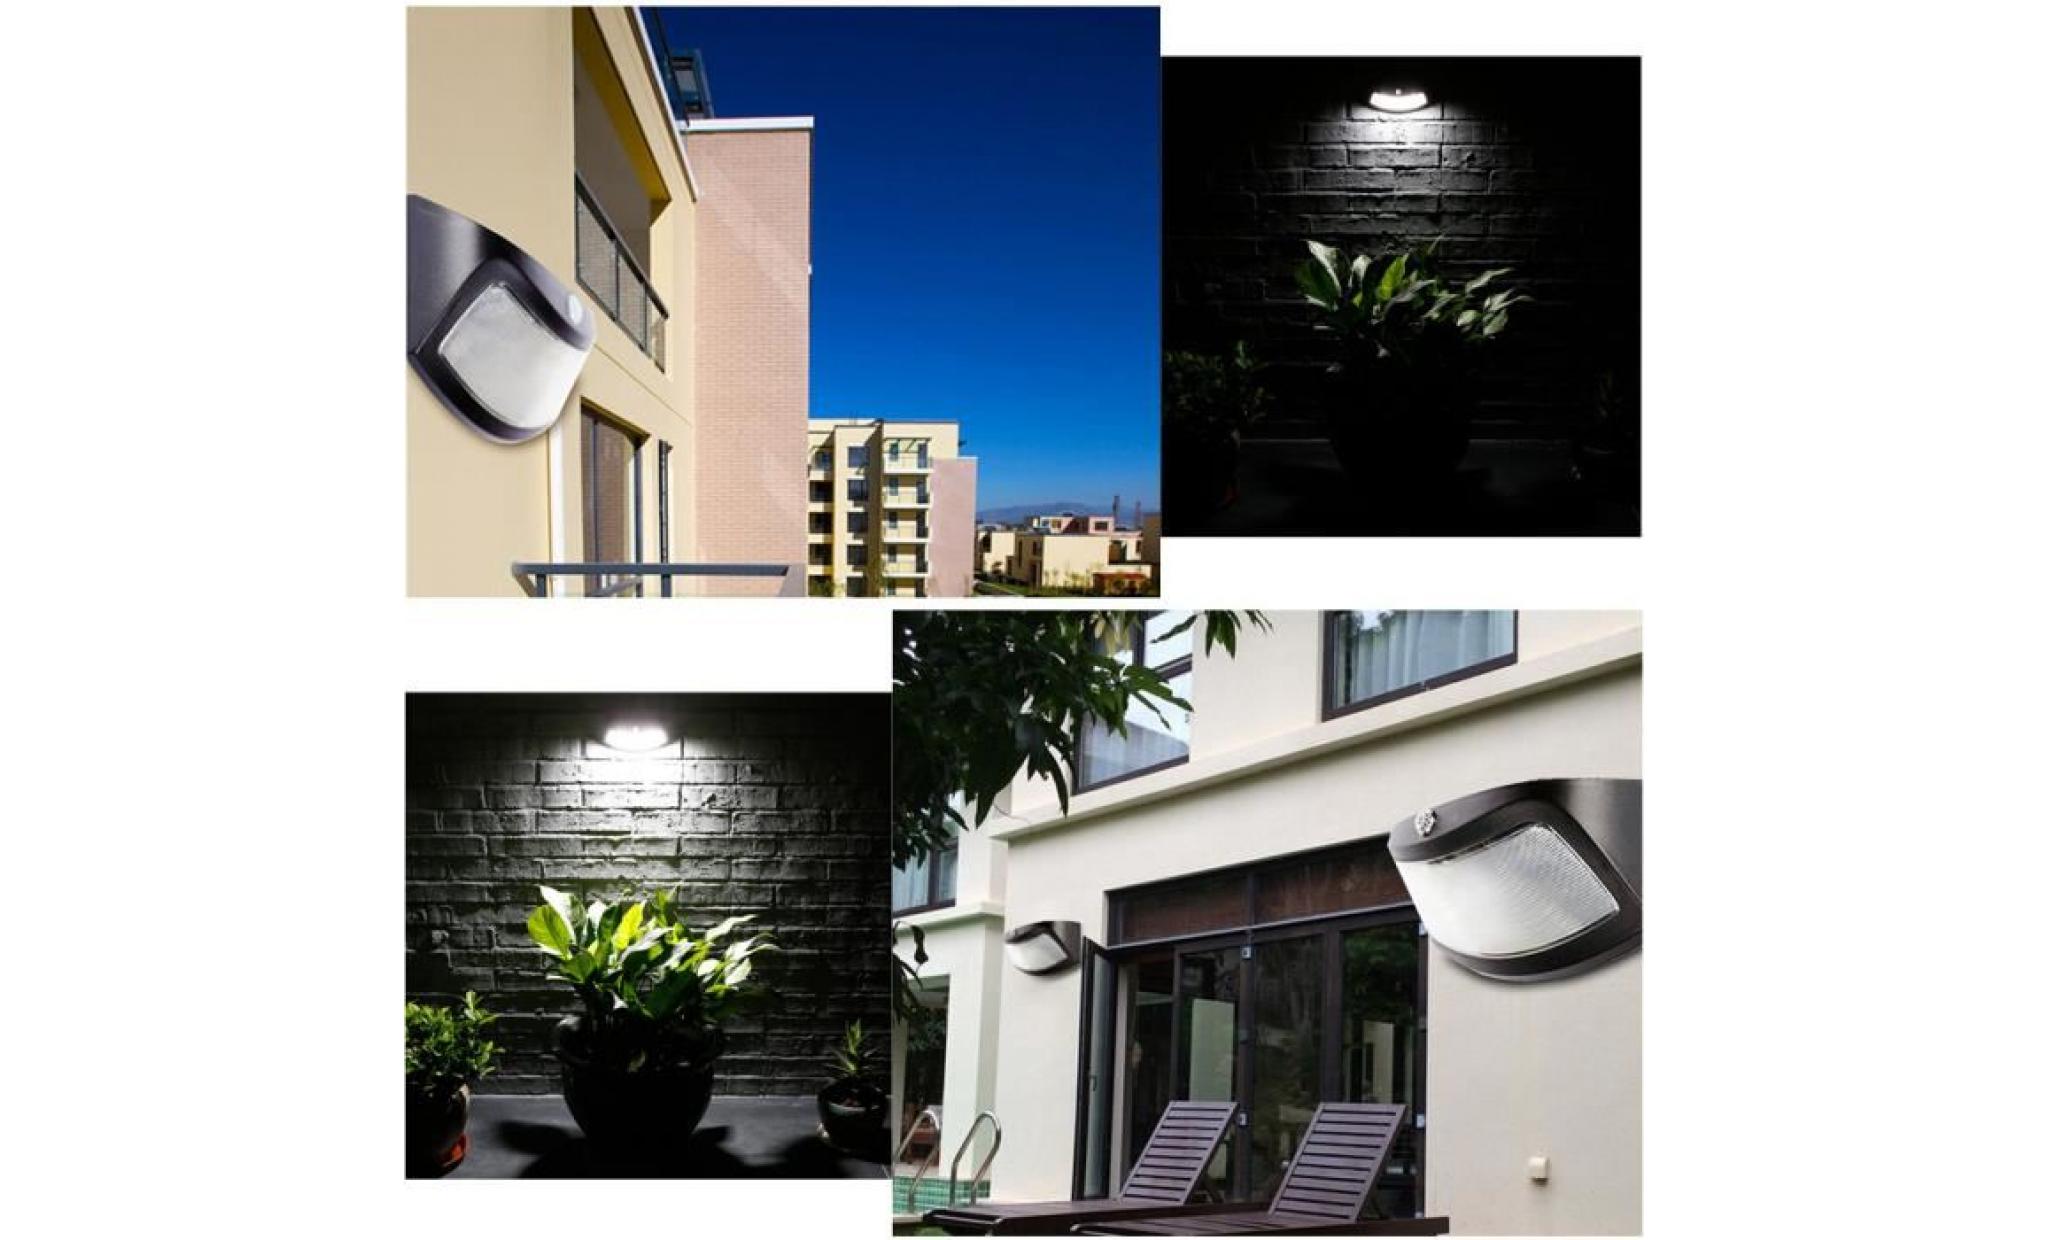 tenoens® 4 led lumière solaire lumières de commande murale lampe solaire escalier lumière noire _love2263 pas cher